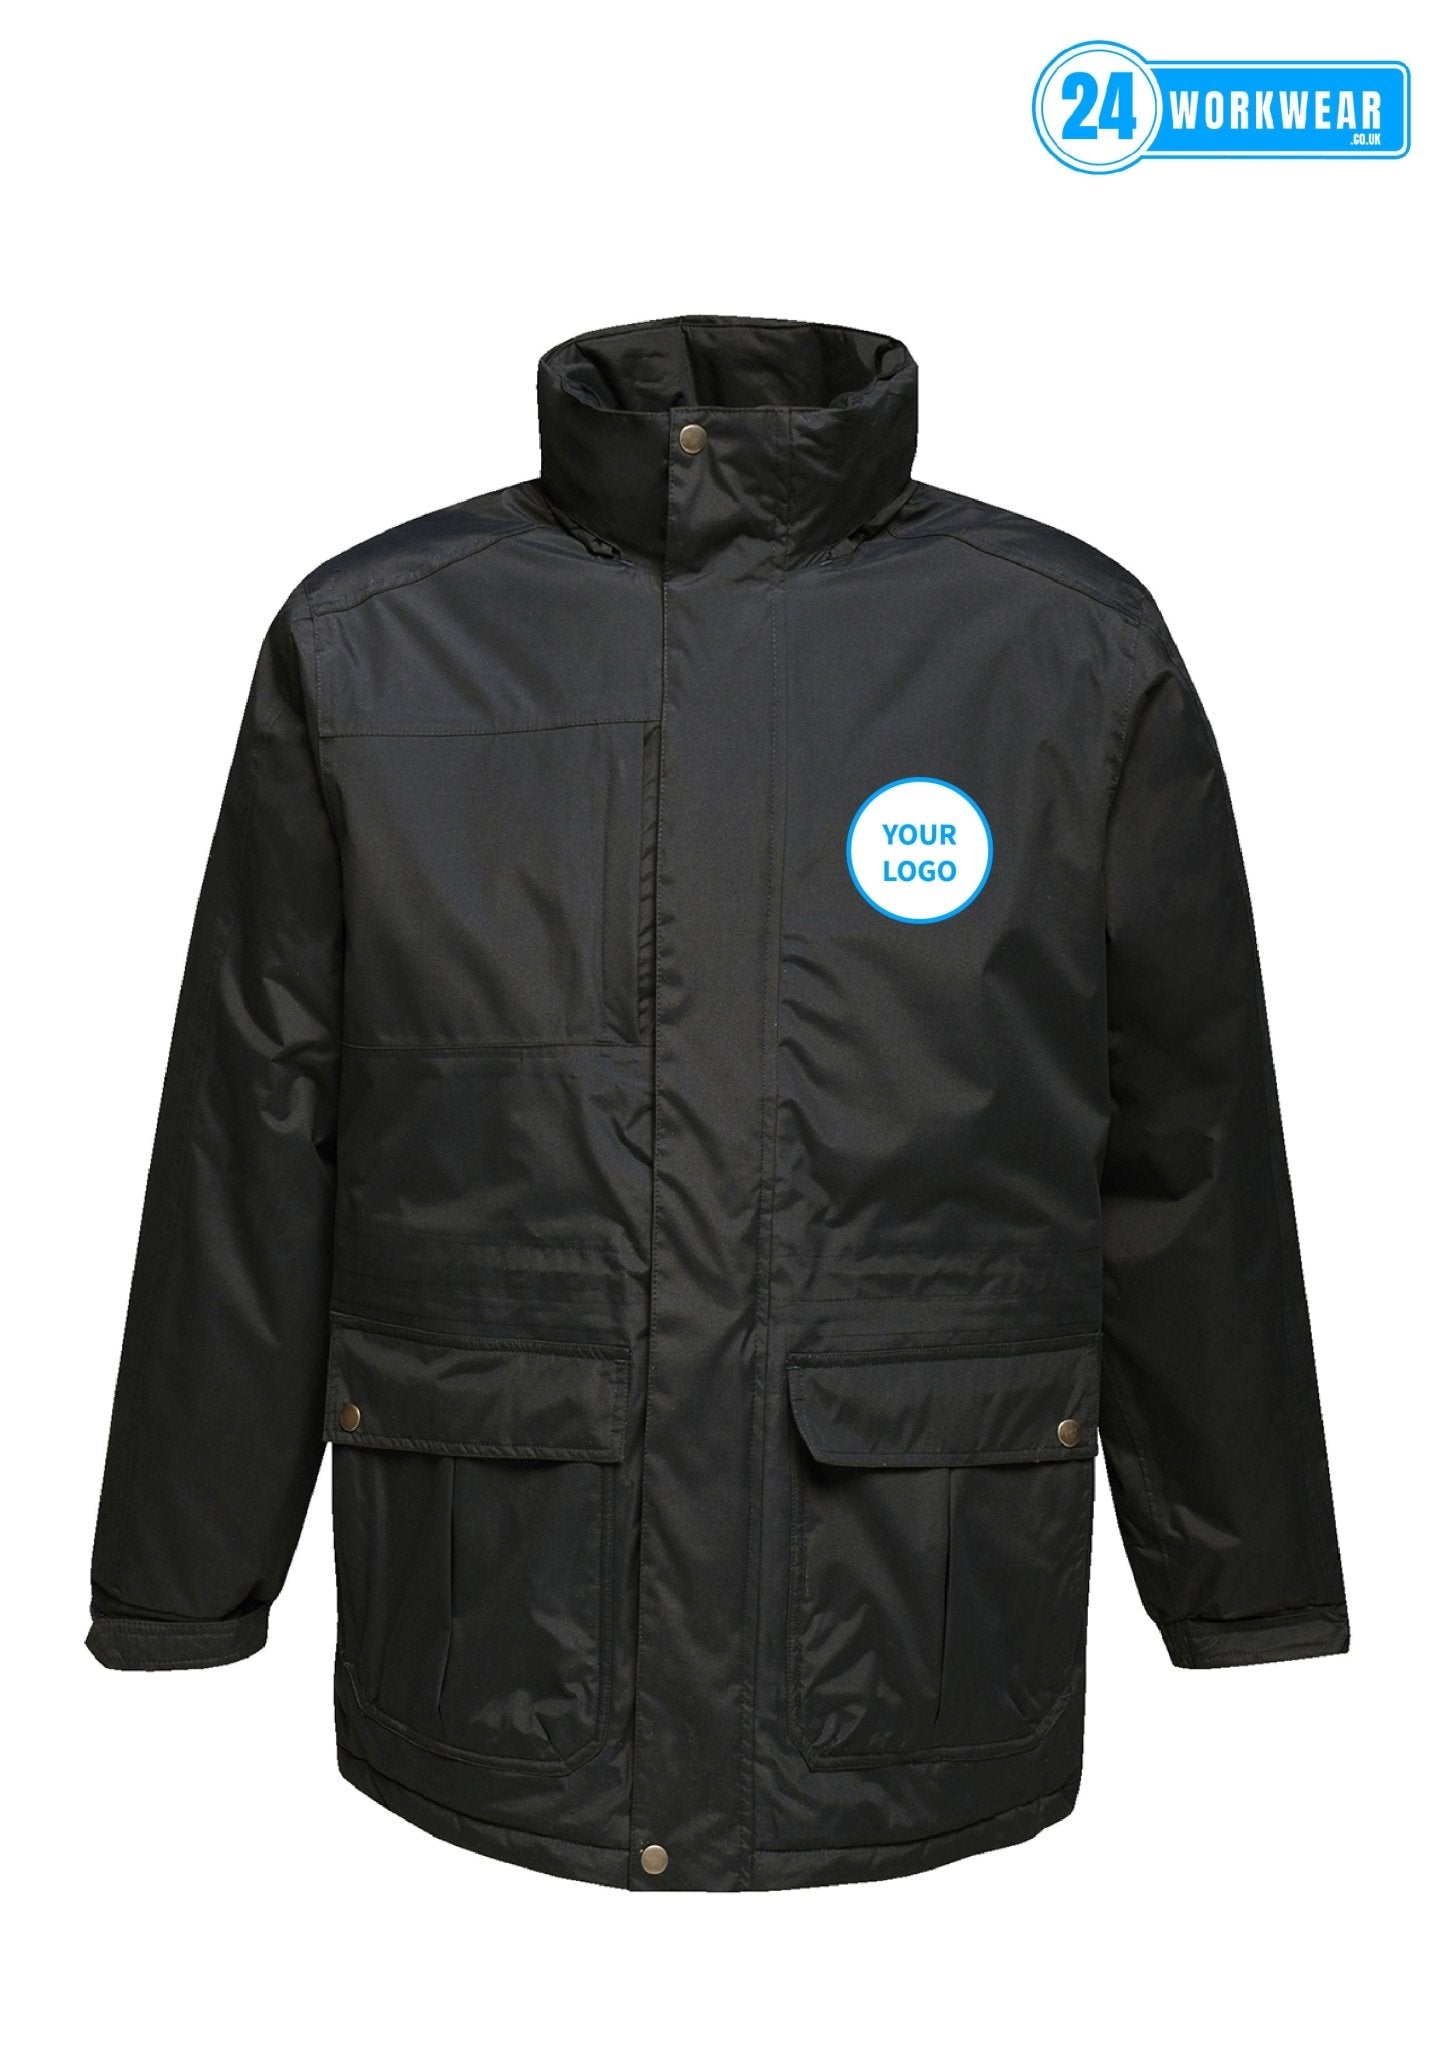 Regatta Darby III Waterproof Insulated Parka Jacket - 24 Workwear - Jacket